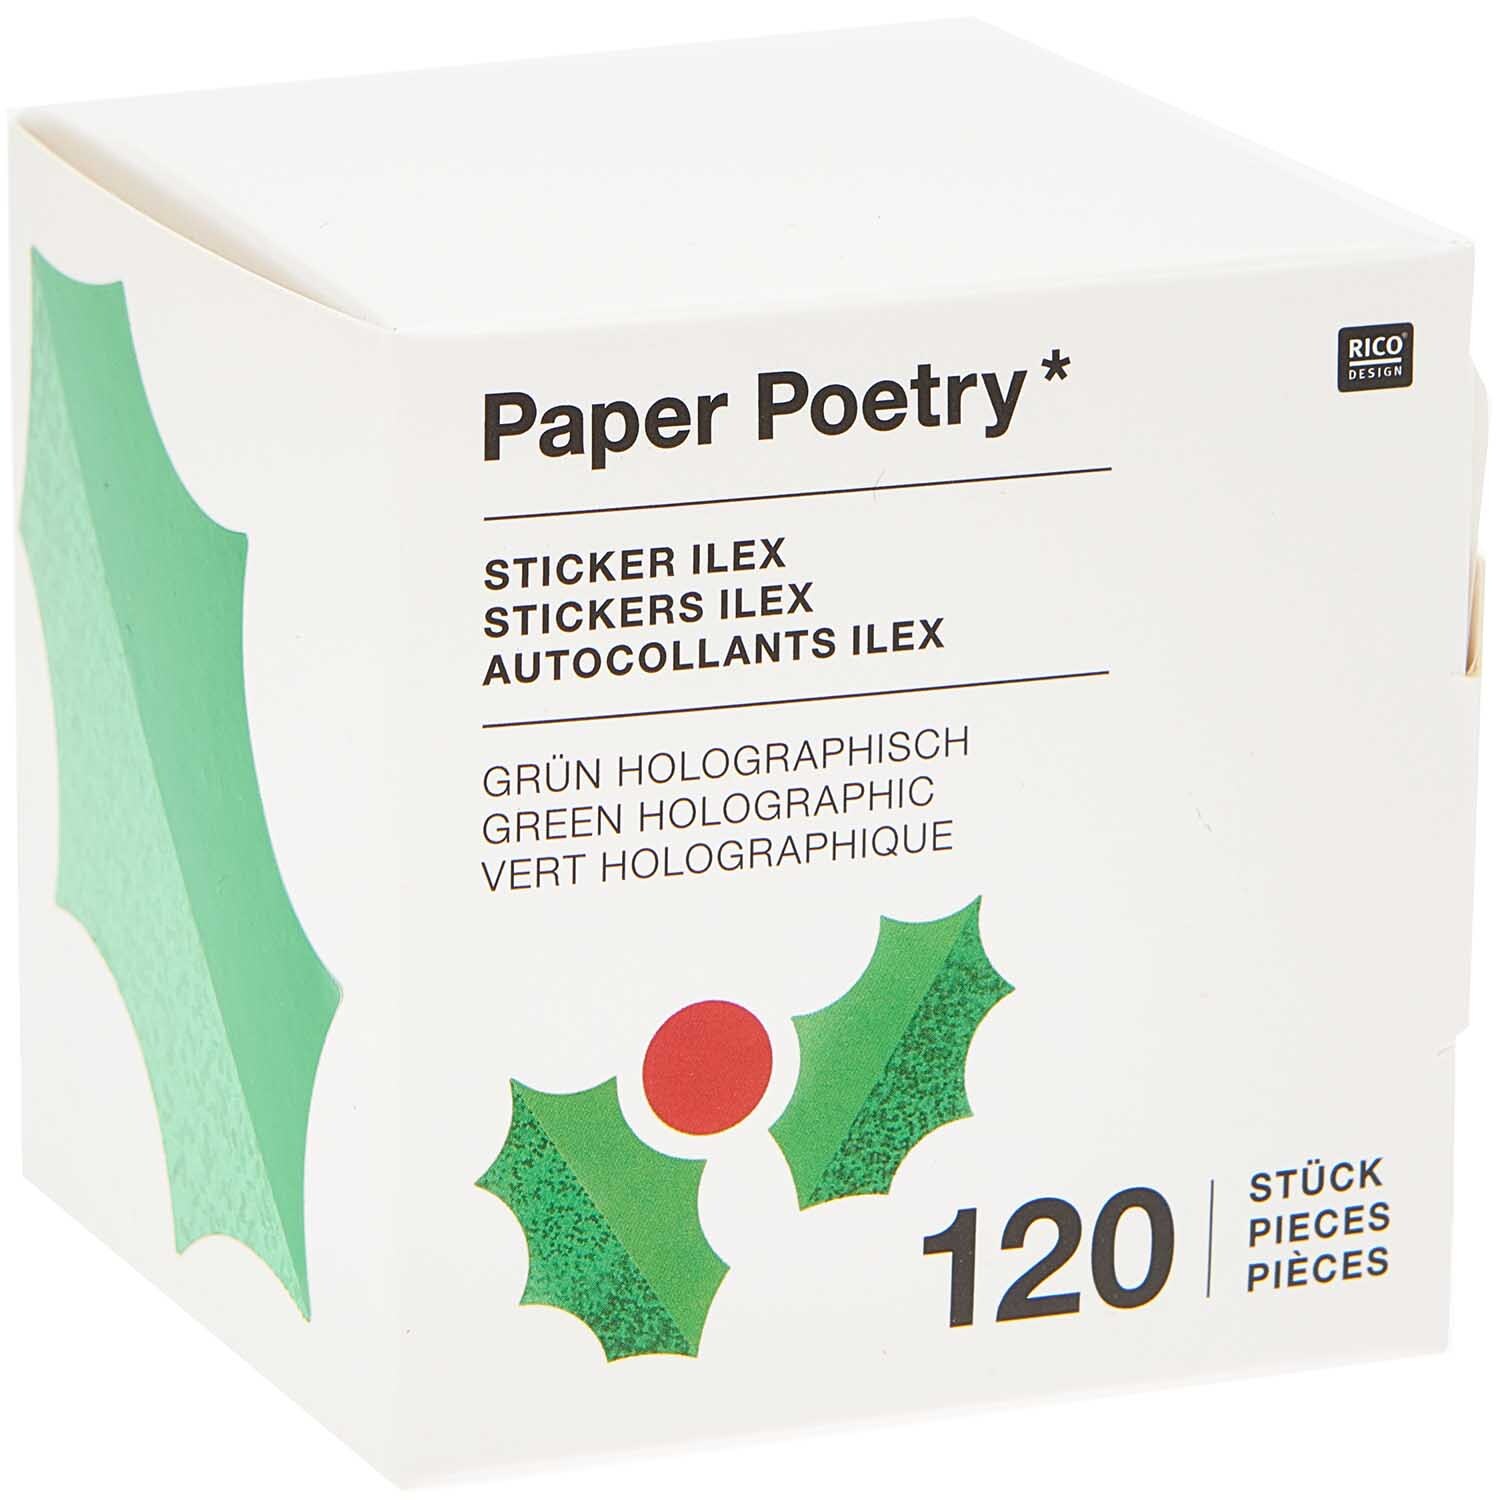 Paper Poetry Sticker Ilex 120 Stück auf der Rolle Hot Foil